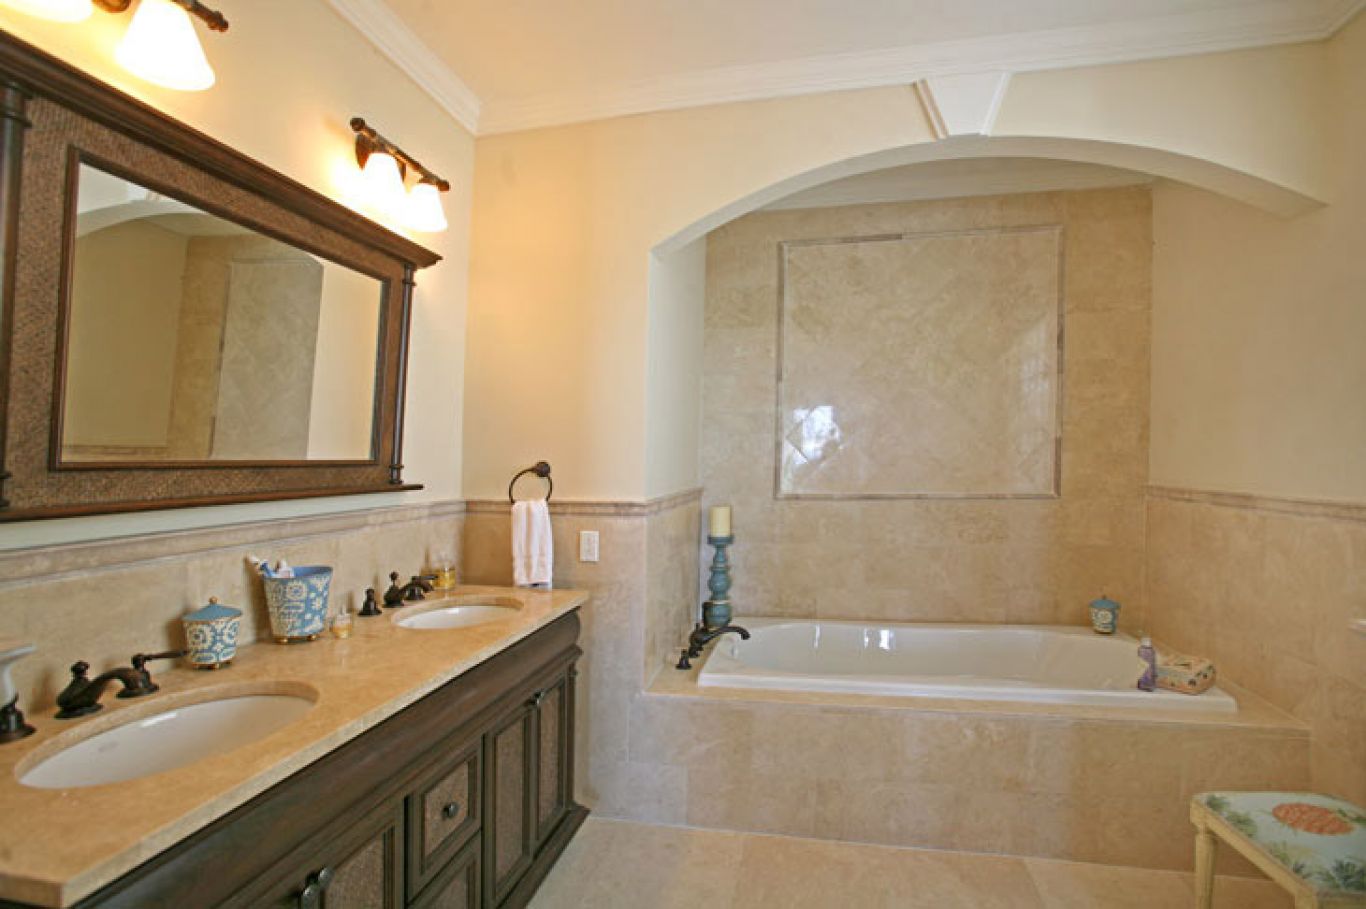 Baño principal finamente decorado con bañera con hidromasaje.